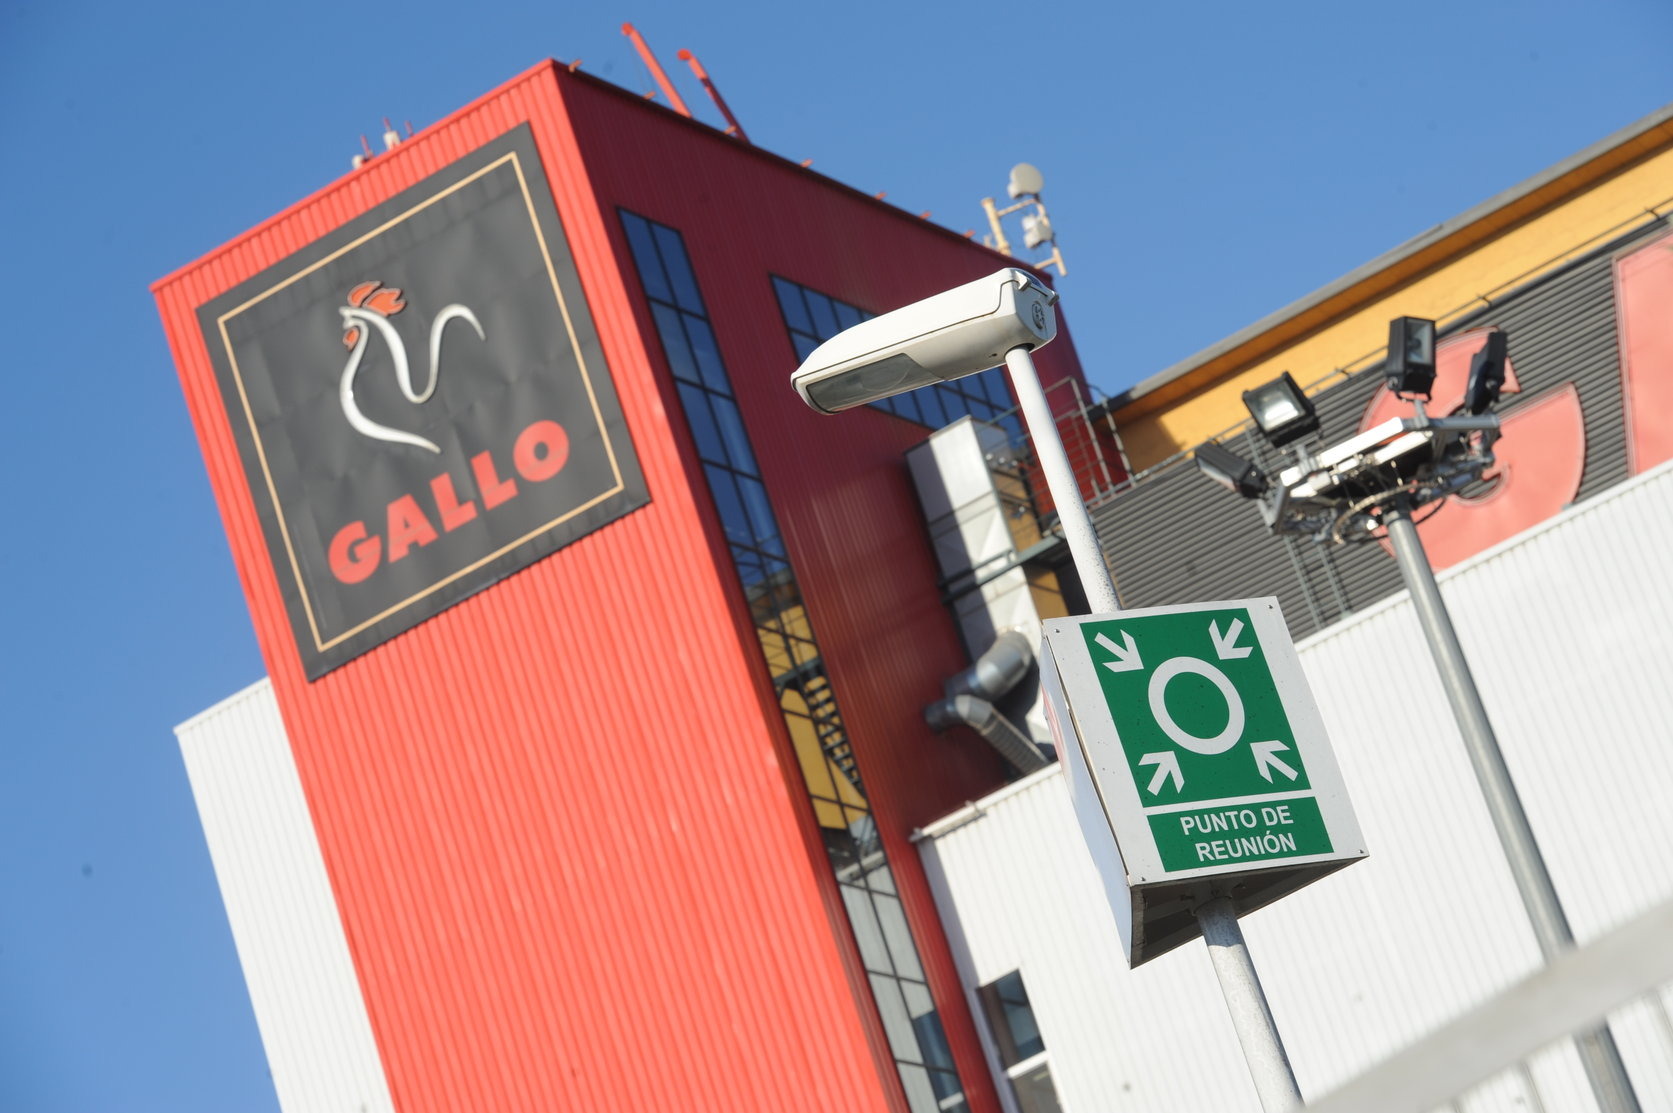 Aspecte de la fàbrica de Pastas Gallo a Granollers en una imatge d'arxiu